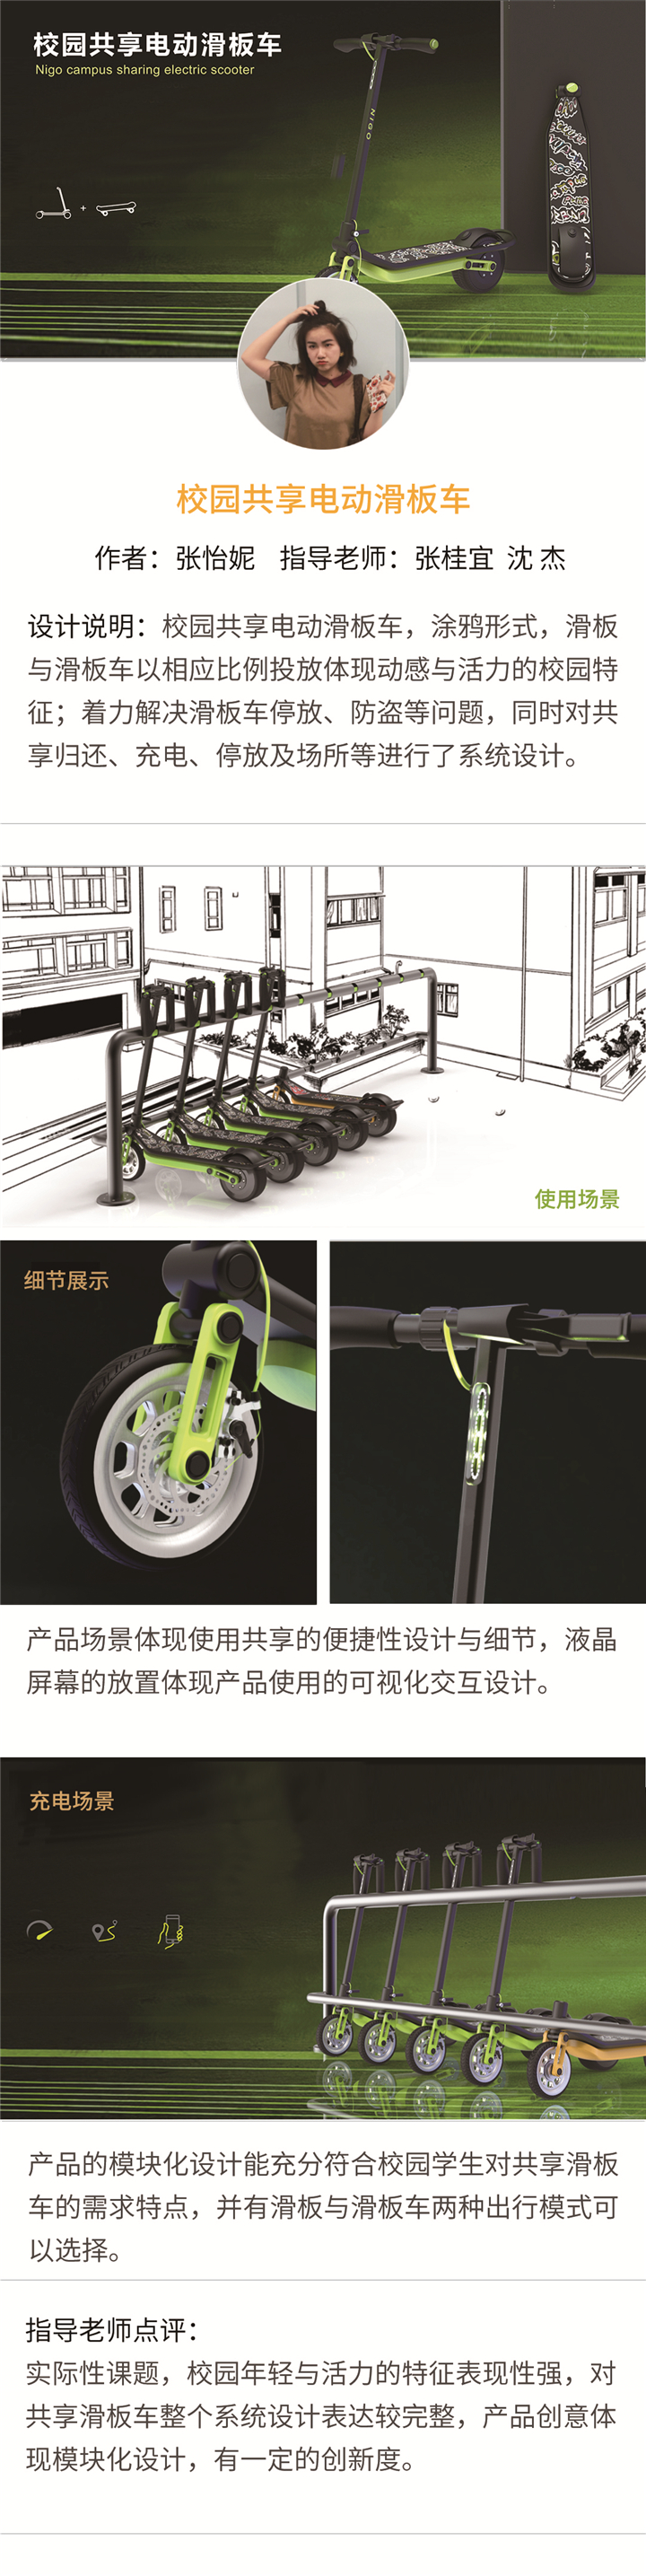 产品设计——校园共享电动滑板车-设计中国